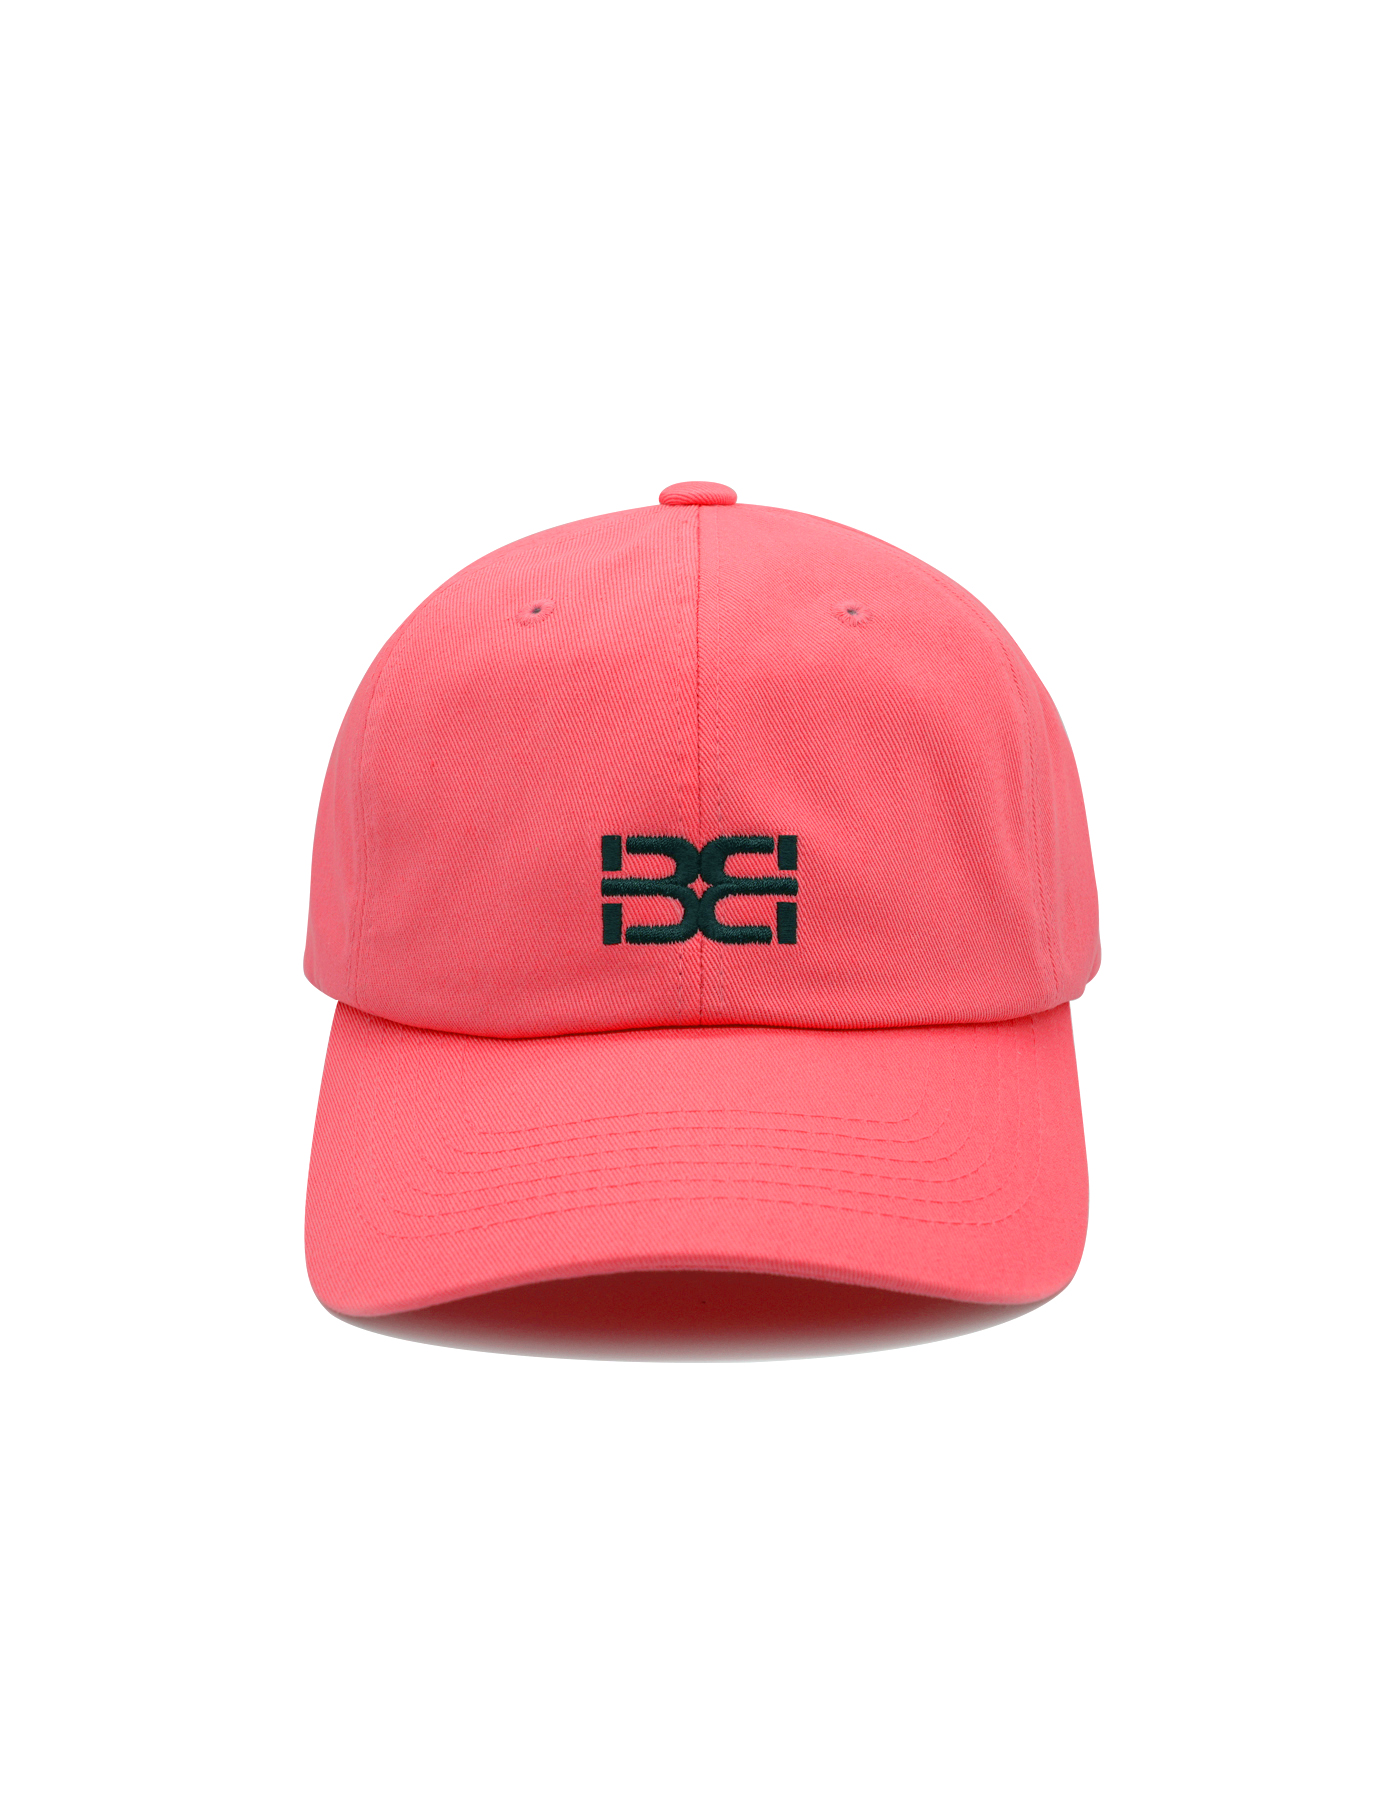 BB LOGO CAP (PINK SALMON)